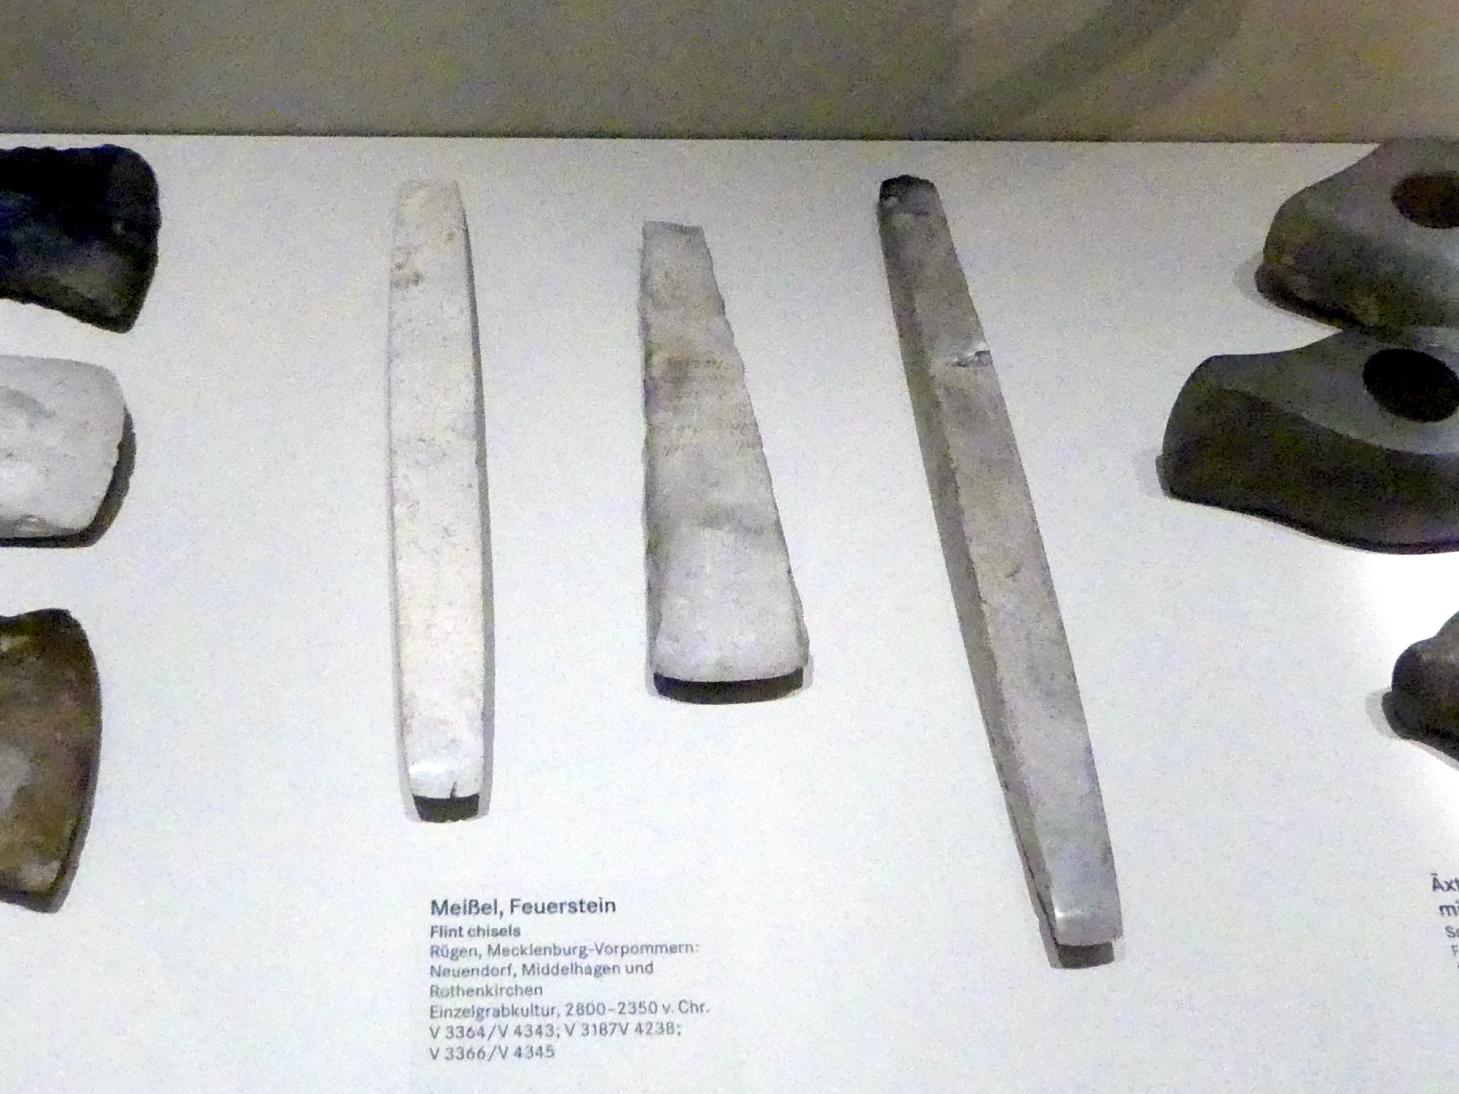 Meißel, Nordisches Neolithikum, 4400 - 2350 v. Chr., 2800 - 2350 v. Chr.